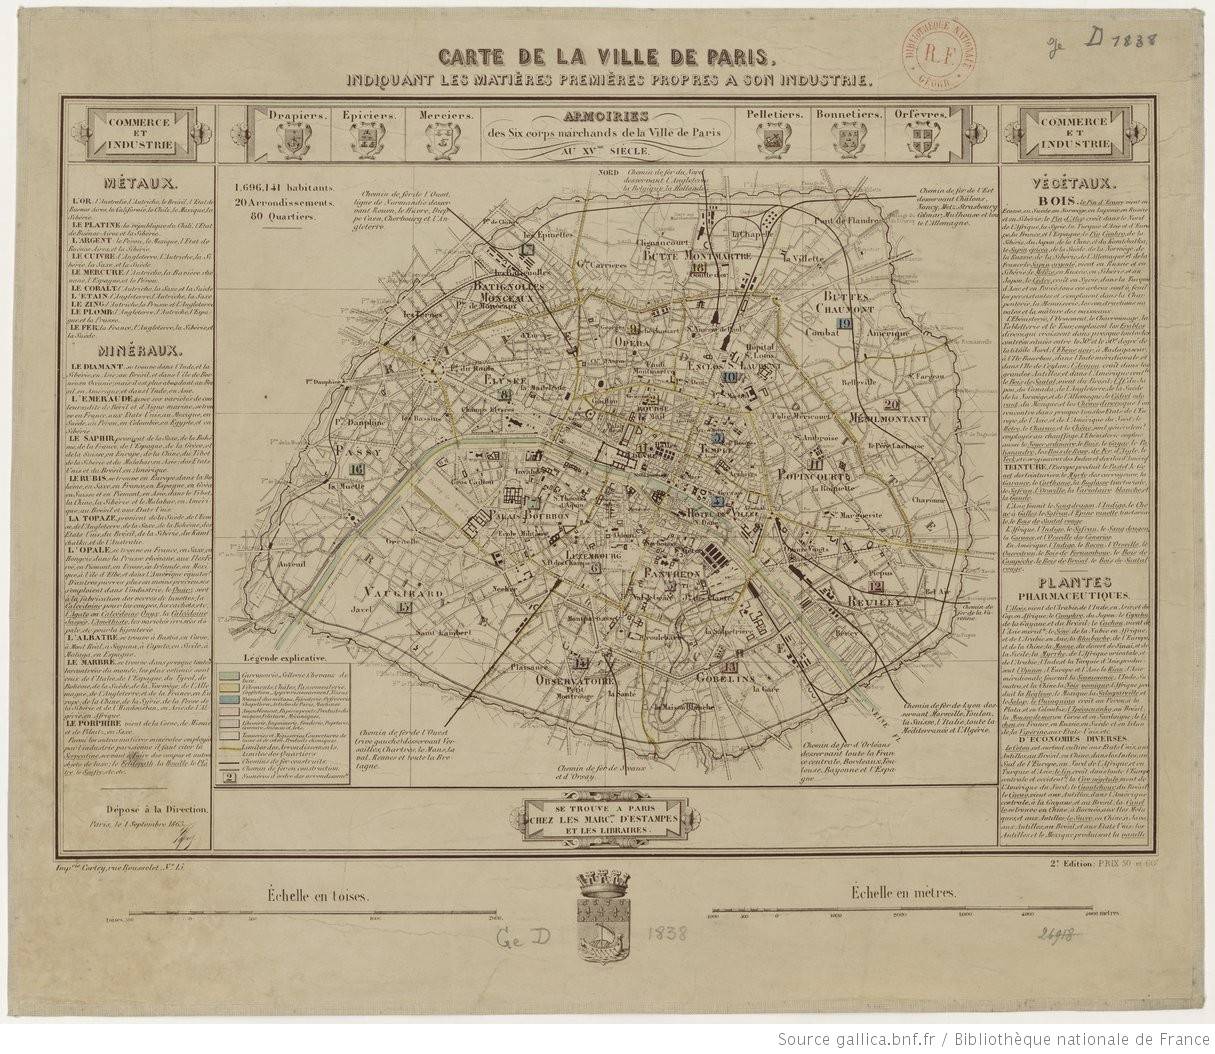 Carte industrielle de Paris, 1863